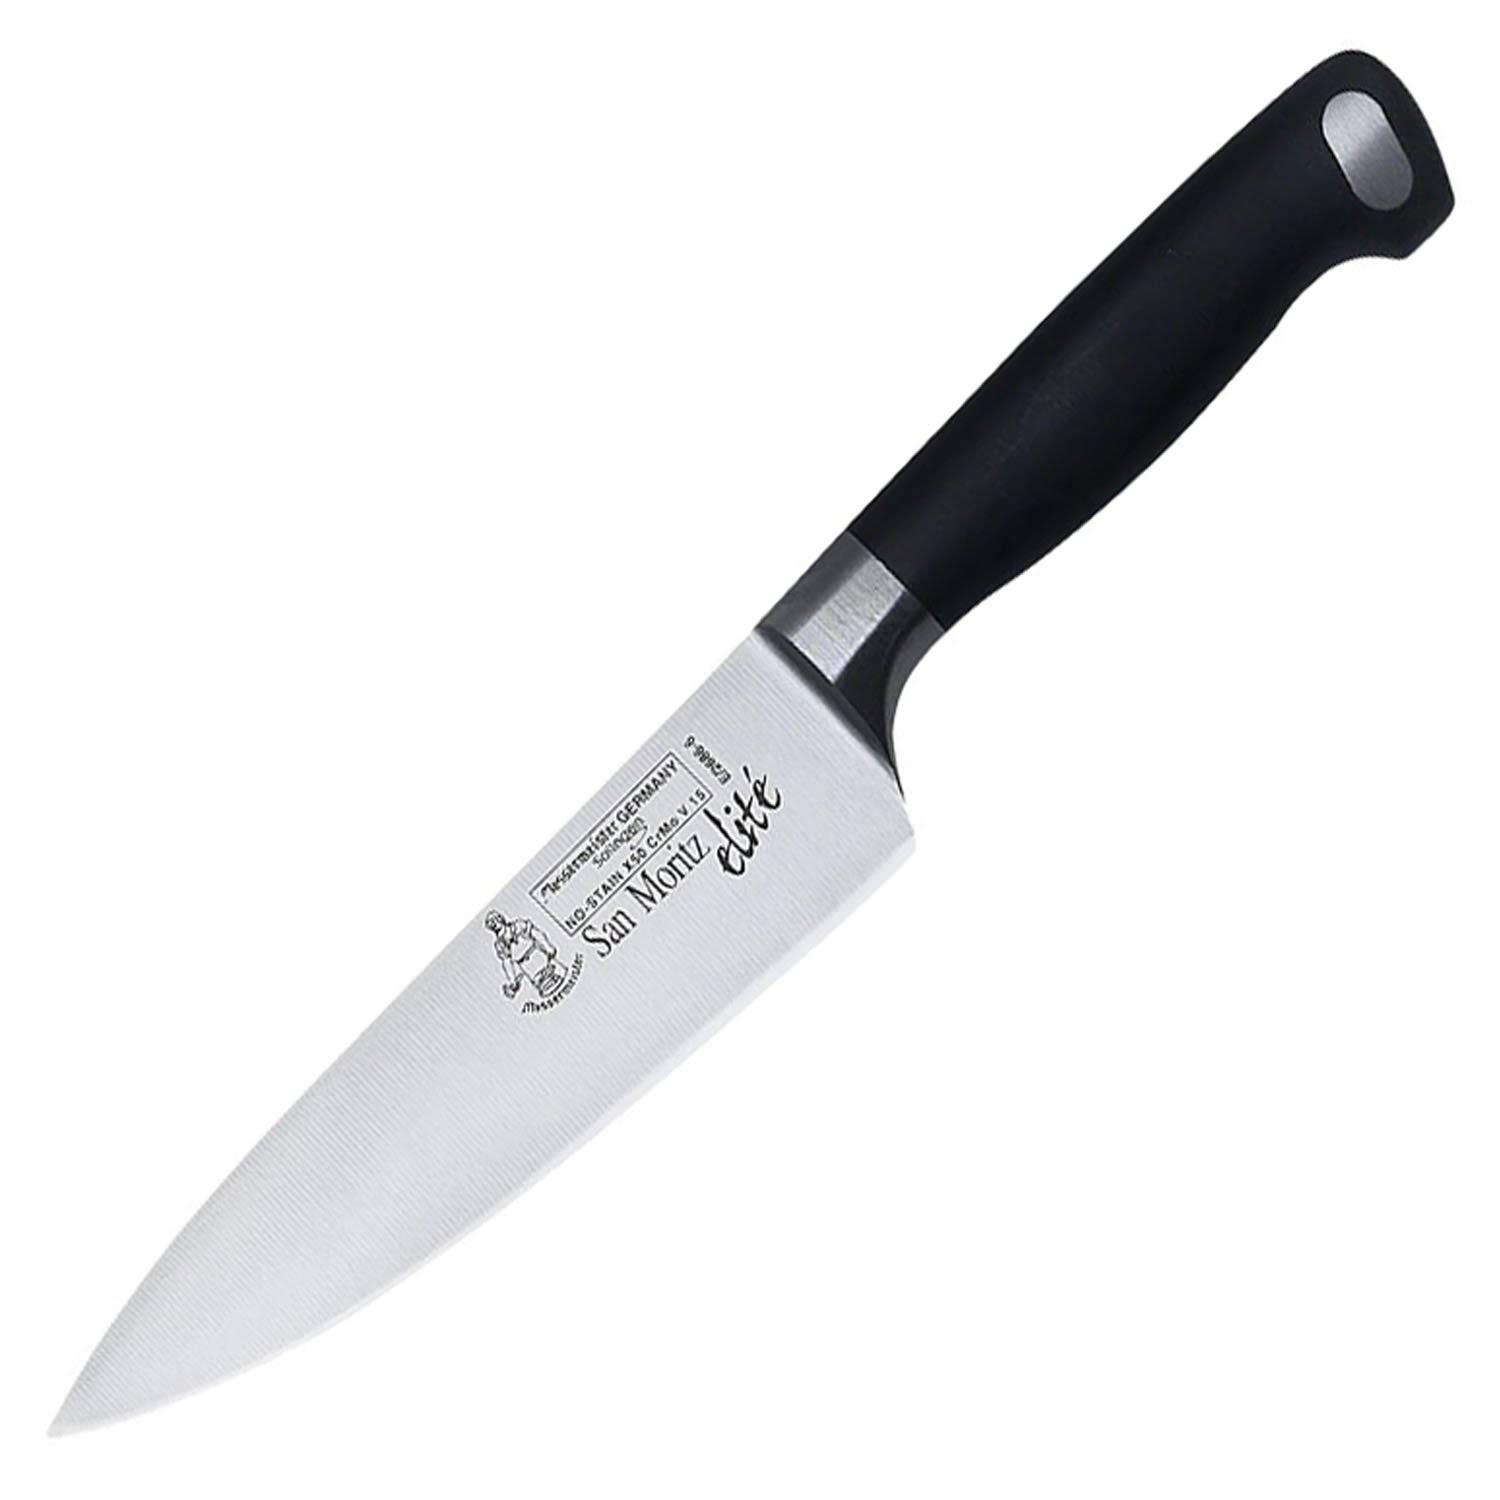 Messermeister San Moritz Elite Chef's Knife - 6in